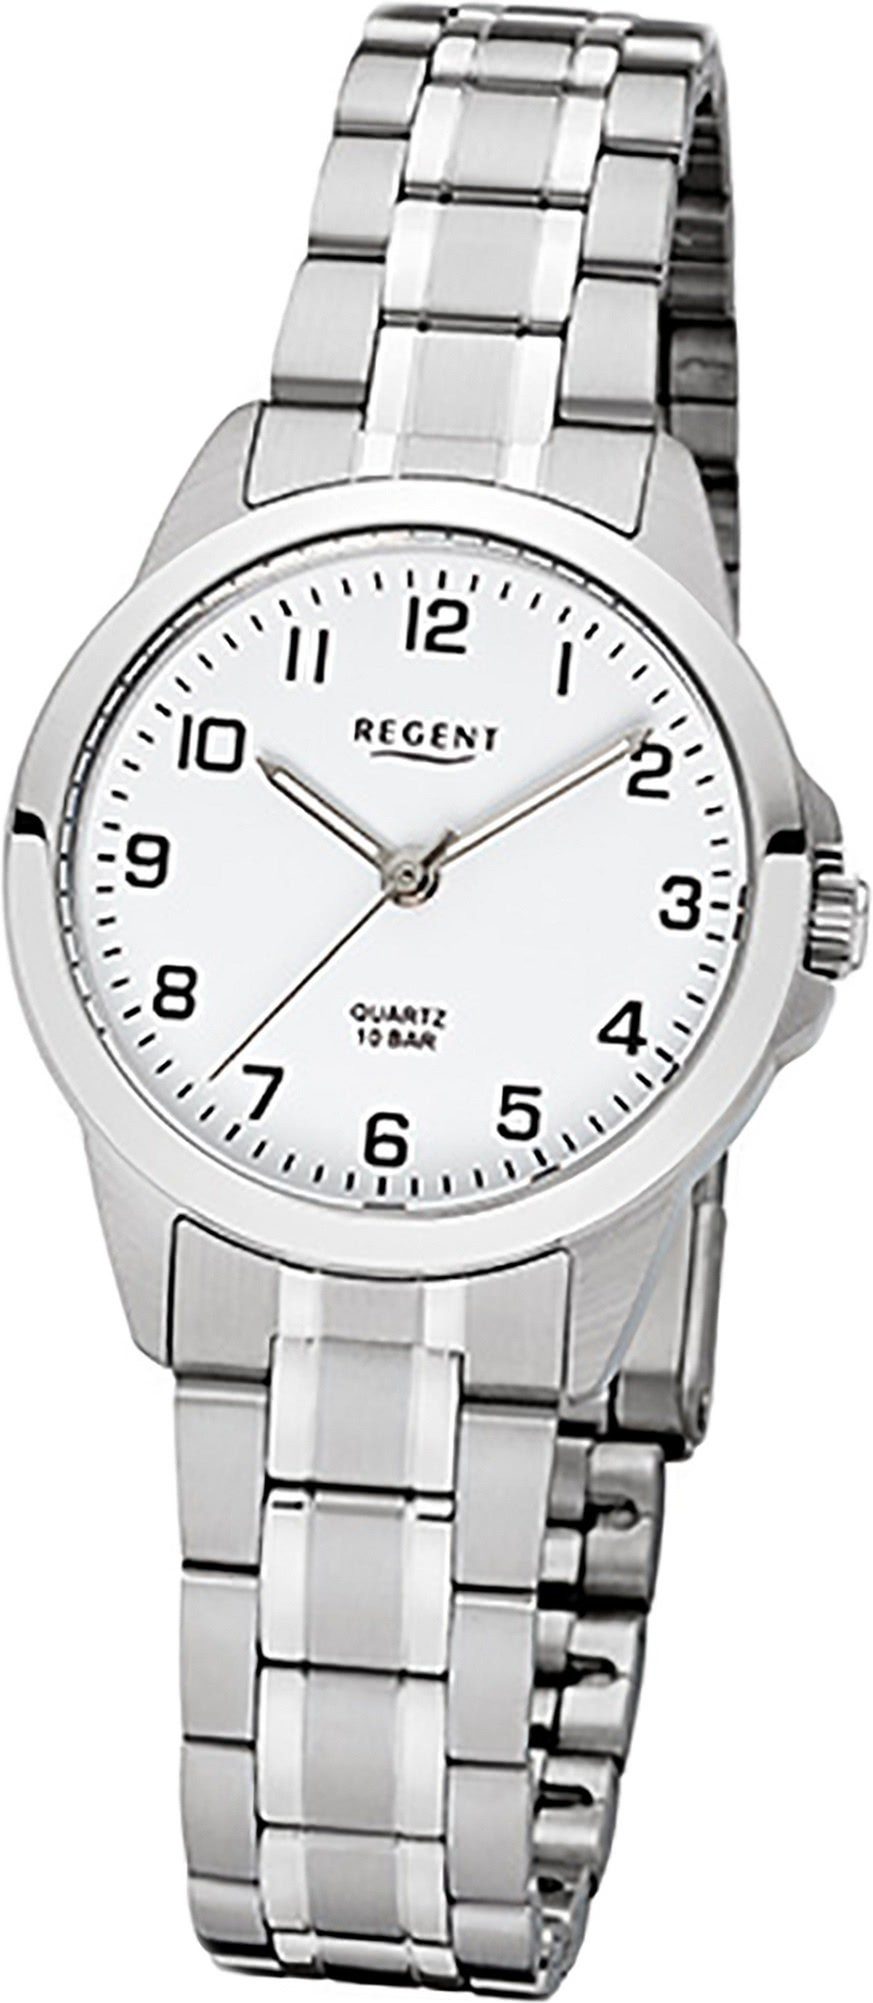 Regent Quarzuhr Regent Edelstahl Damen Uhr F-1003 Quarz, (Analoguhr),  Damenuhr Edelstahlarmband, rundes Gehäuse, klein (ca. 29mm) weiß